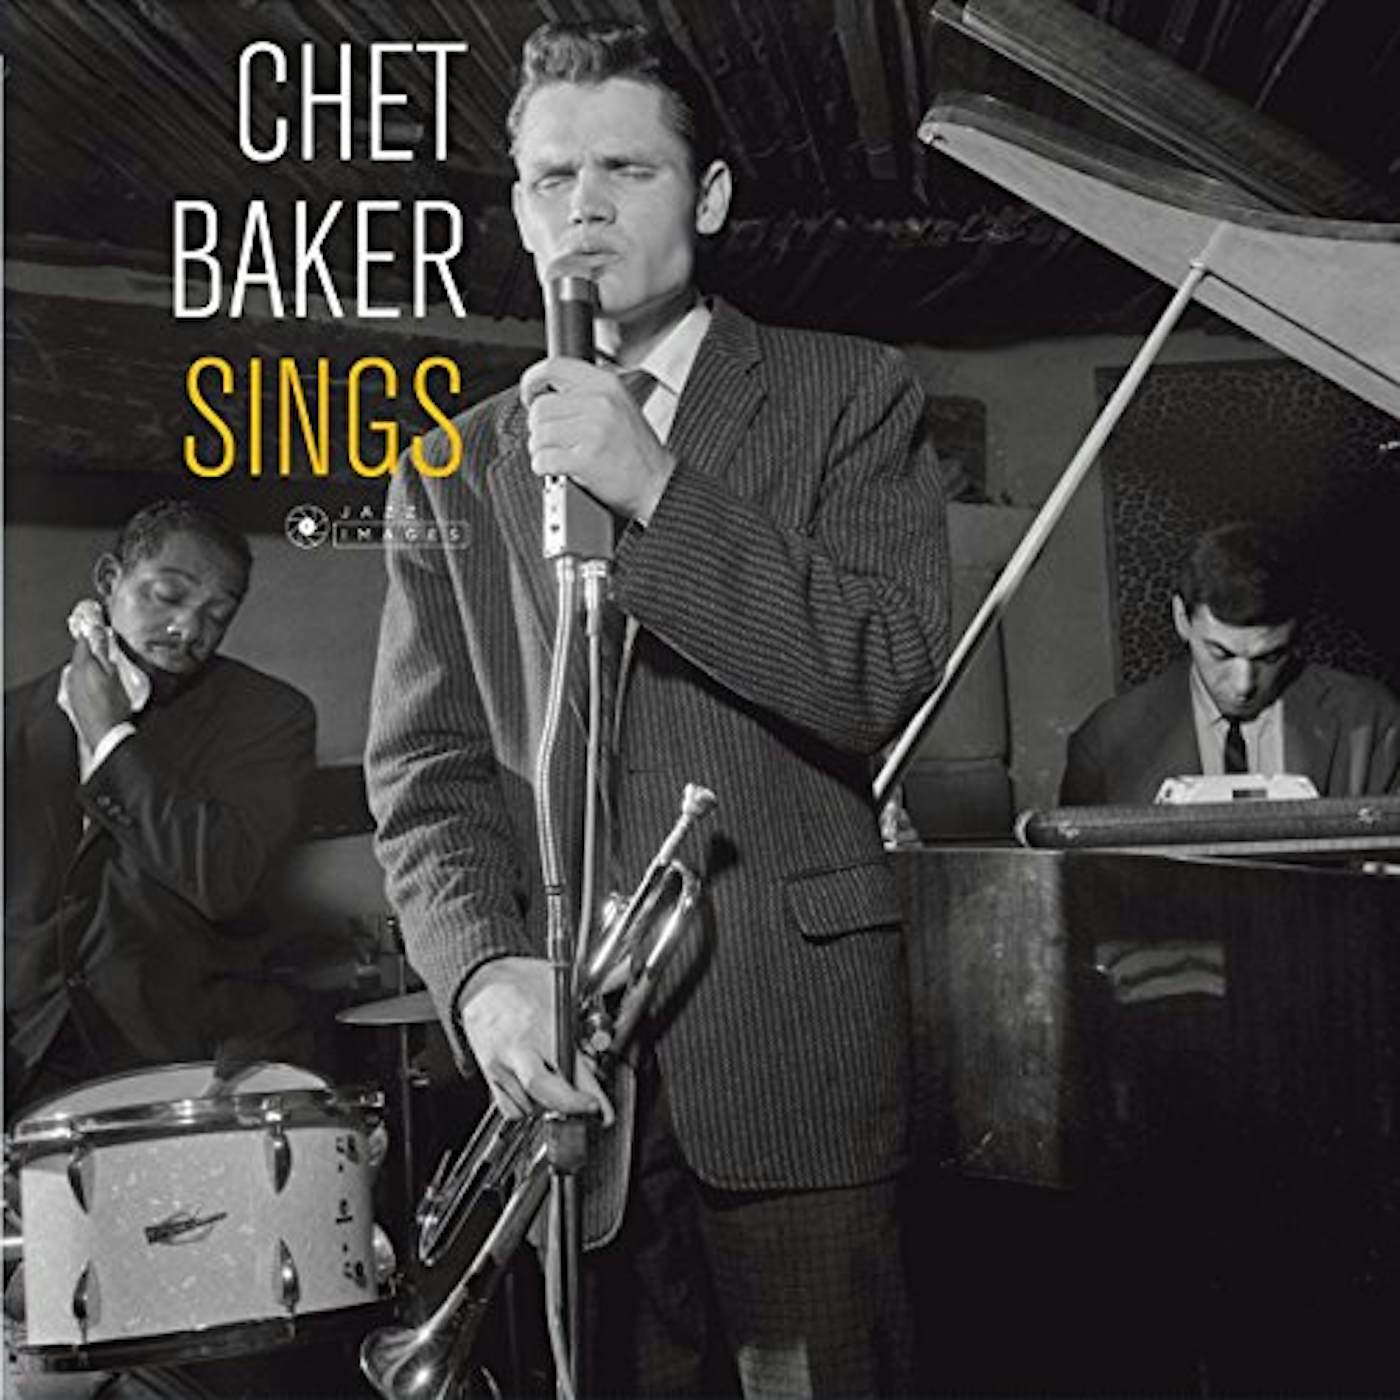 Chet Baker SINGS Vinyl Record